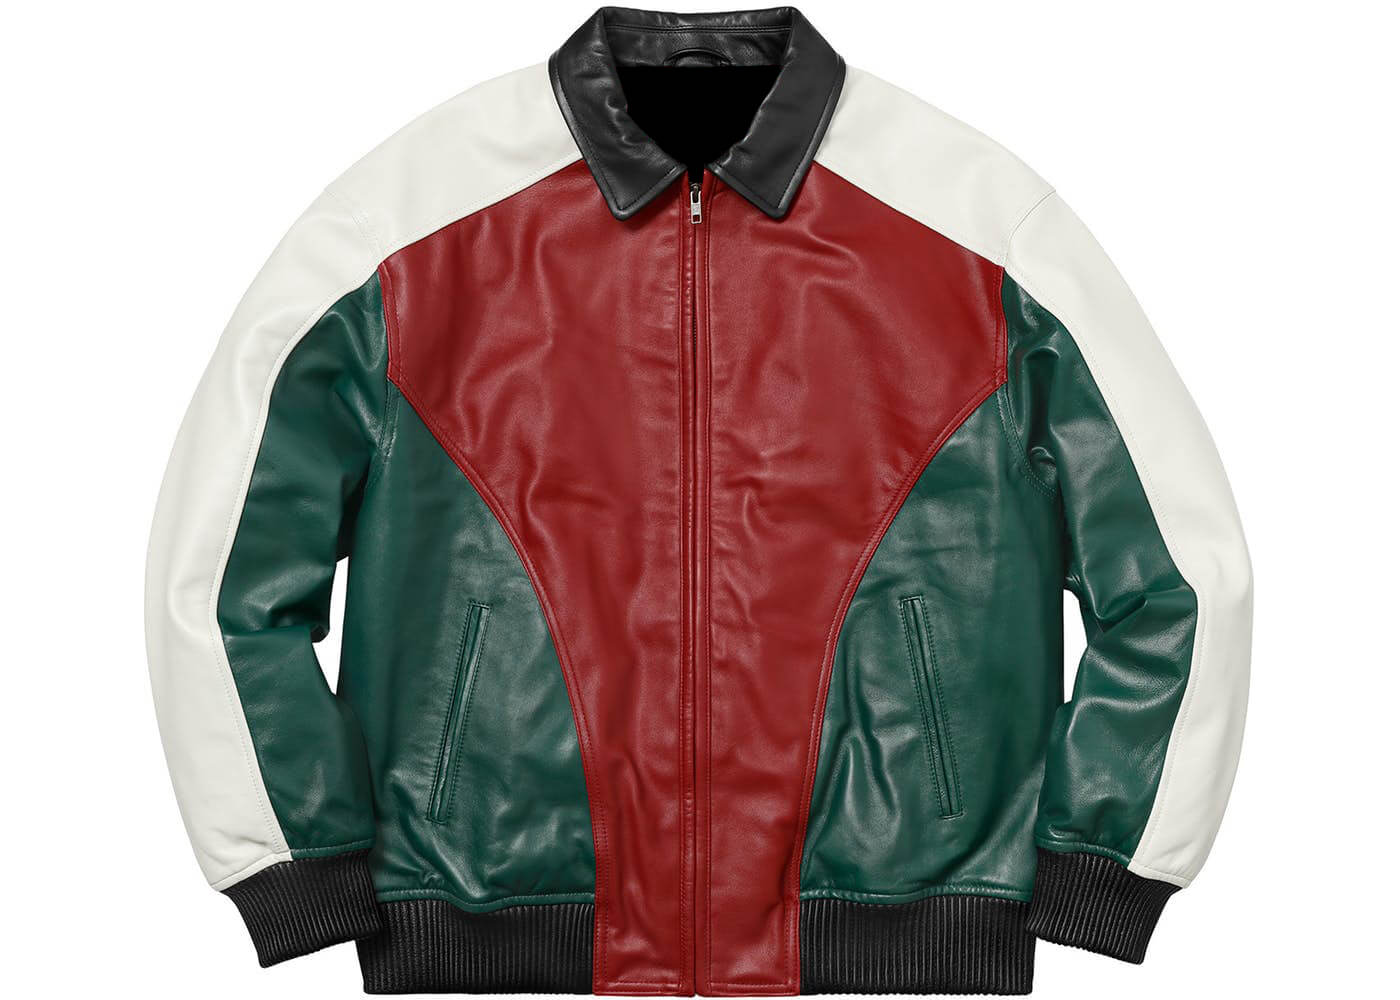 Maker of Jacket Black Leather Jackets Supreme Arc Logo Studded